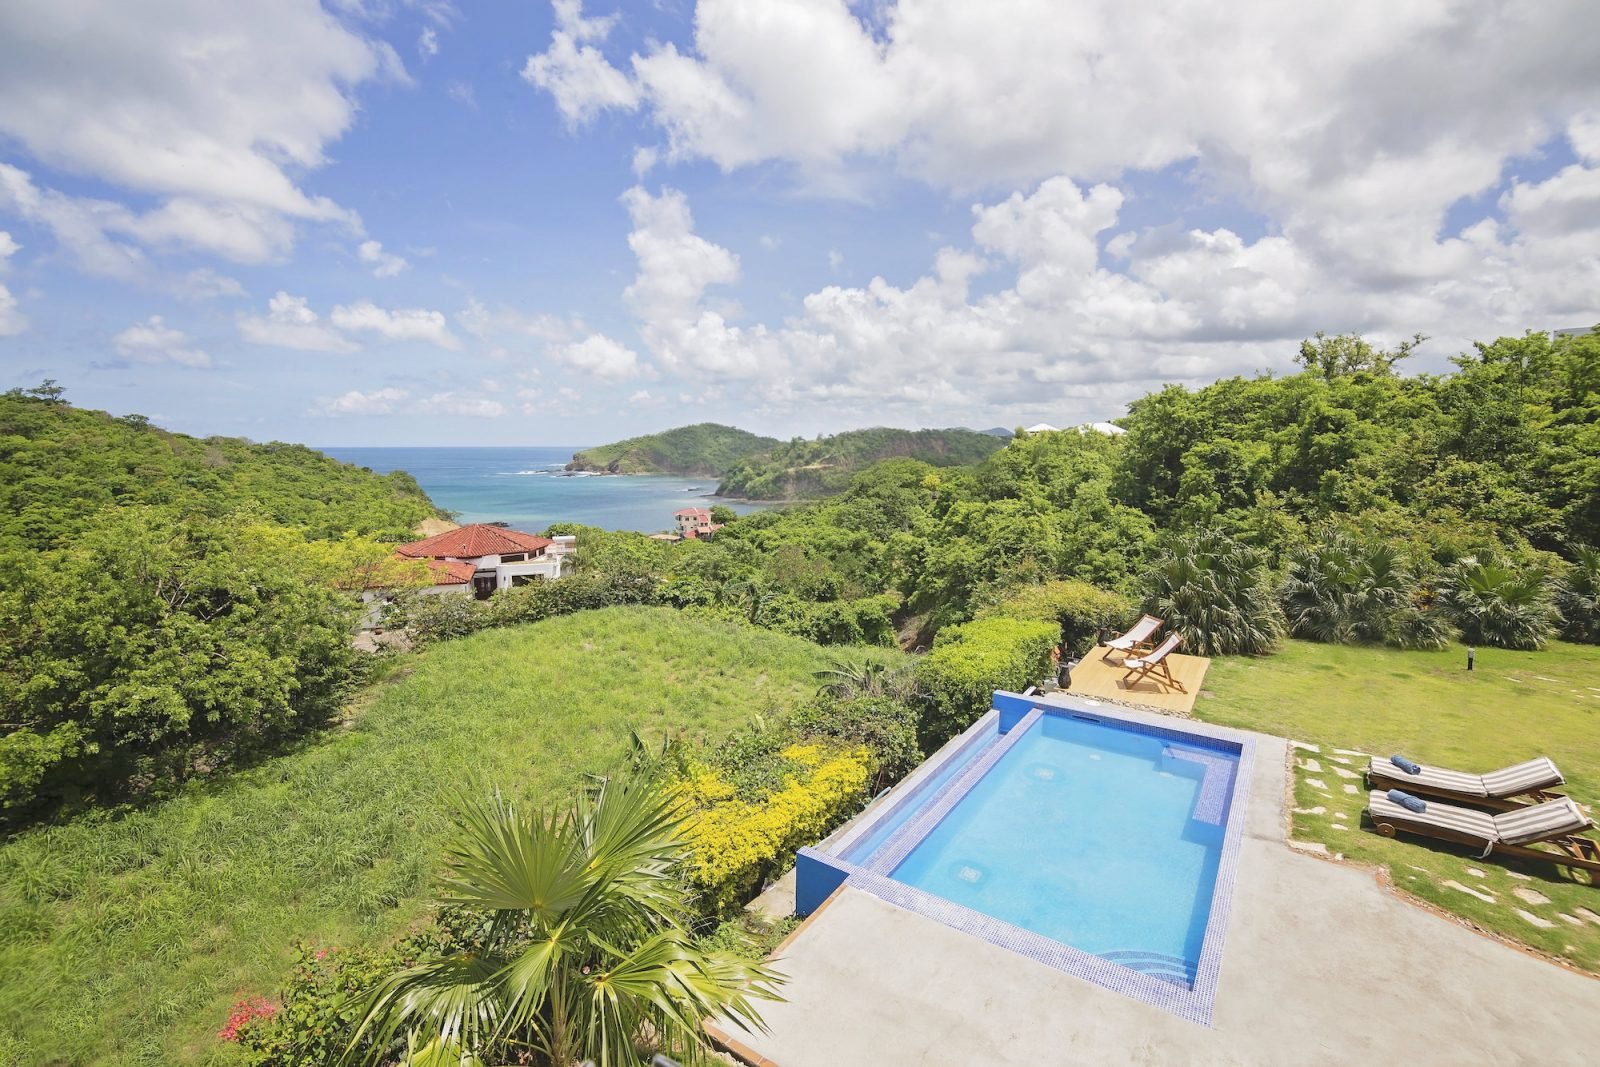 Pacific Marlin San Juan Del Sur Nicaragua Property Real Estate Investing (12).jpg